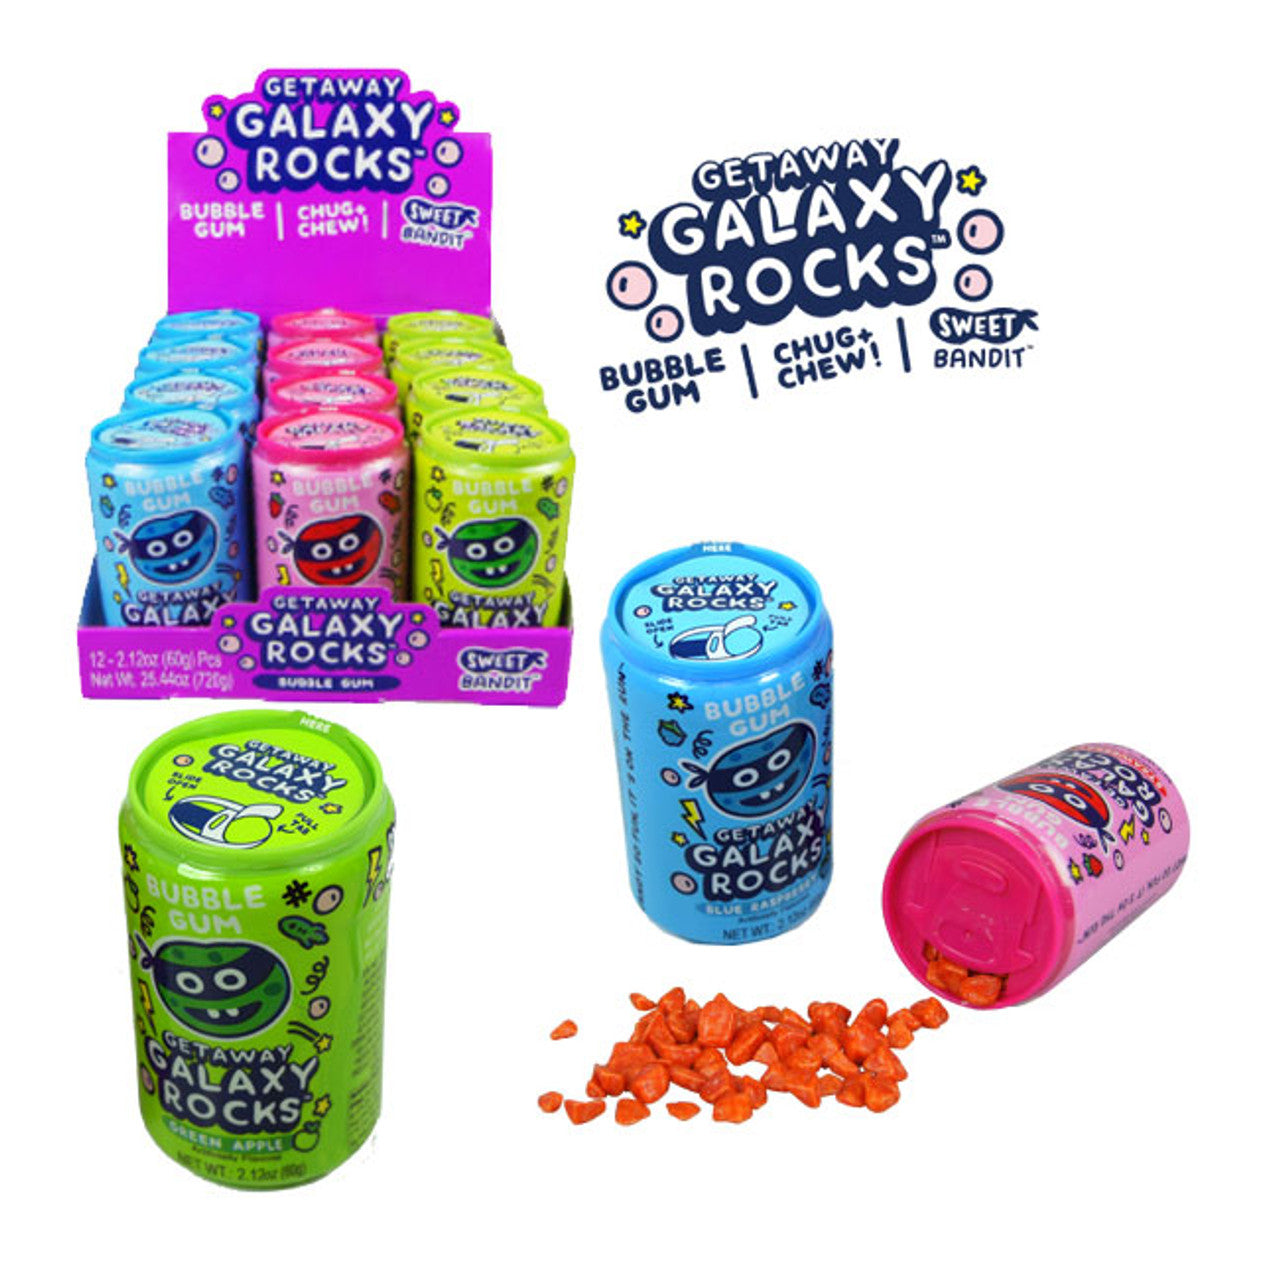 Galaxy Rocks Candy Gum